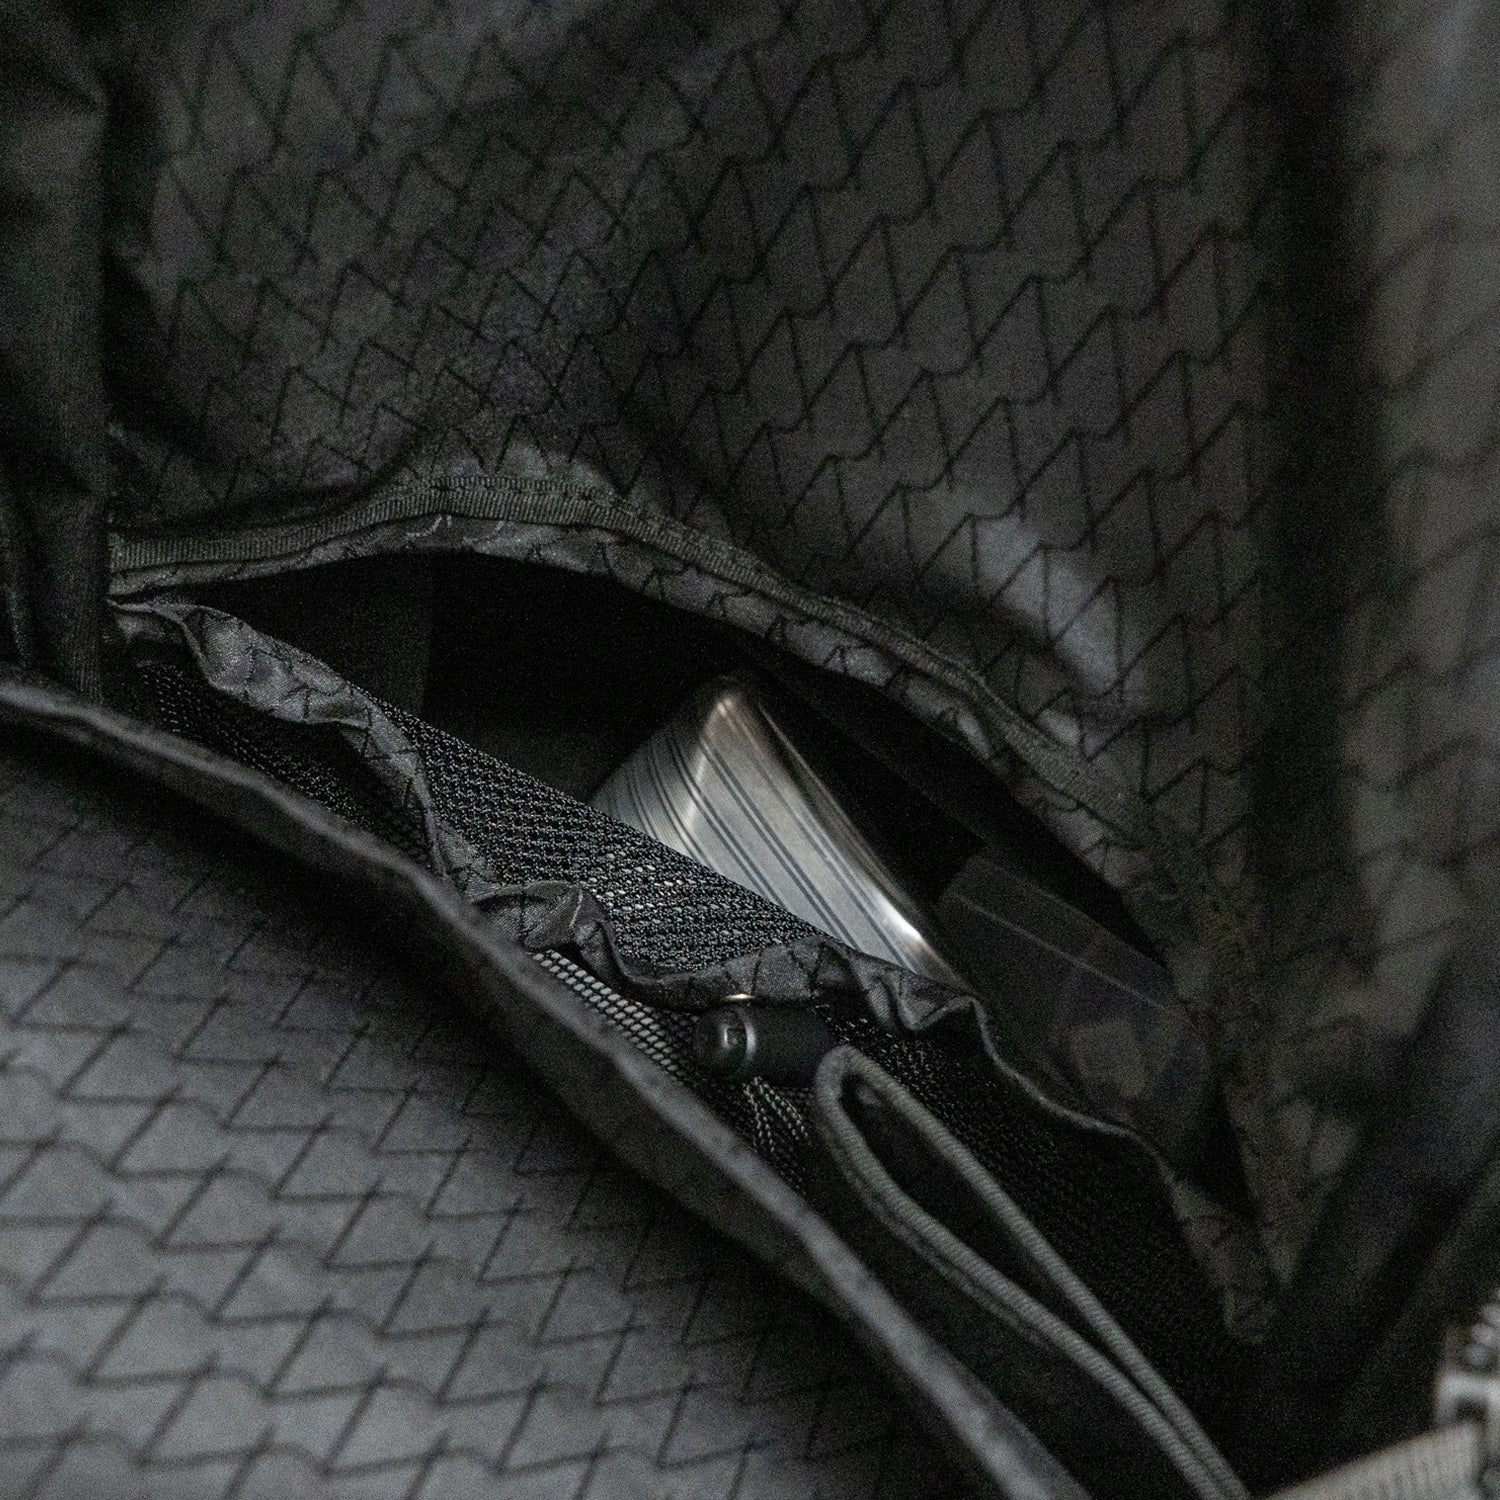 「Momonga ユーティリティバックパック」トップファスナーポケットの下部に位置する内装メッシュポケットがあります。サングラスやストールなど、小物がバッグの底に沈まないように入れておくことができます。